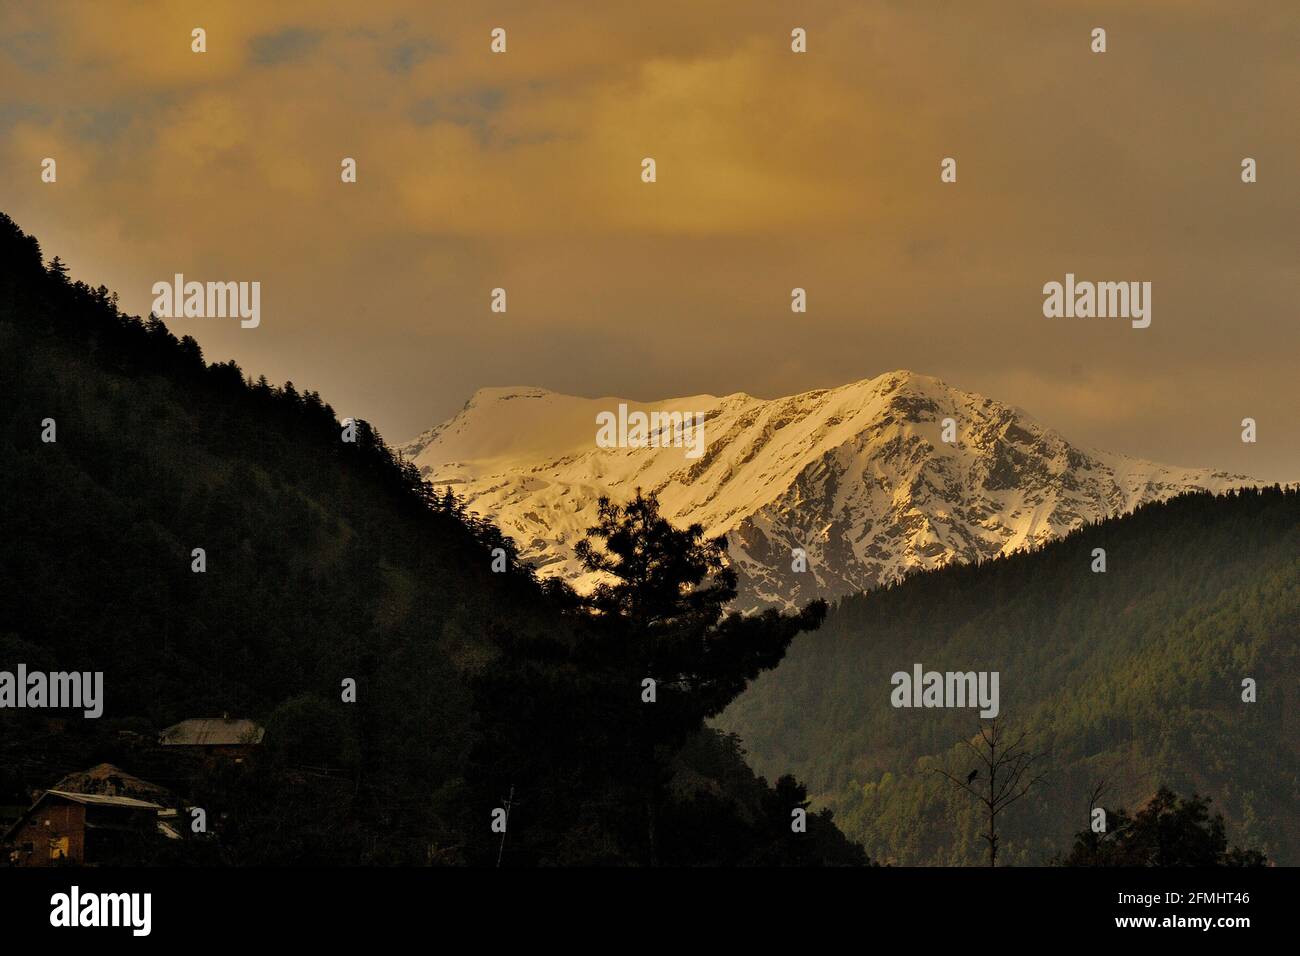 View of Himalayan mountain range, Pahalgam, Jammu & Kashmir, India Stock Photo